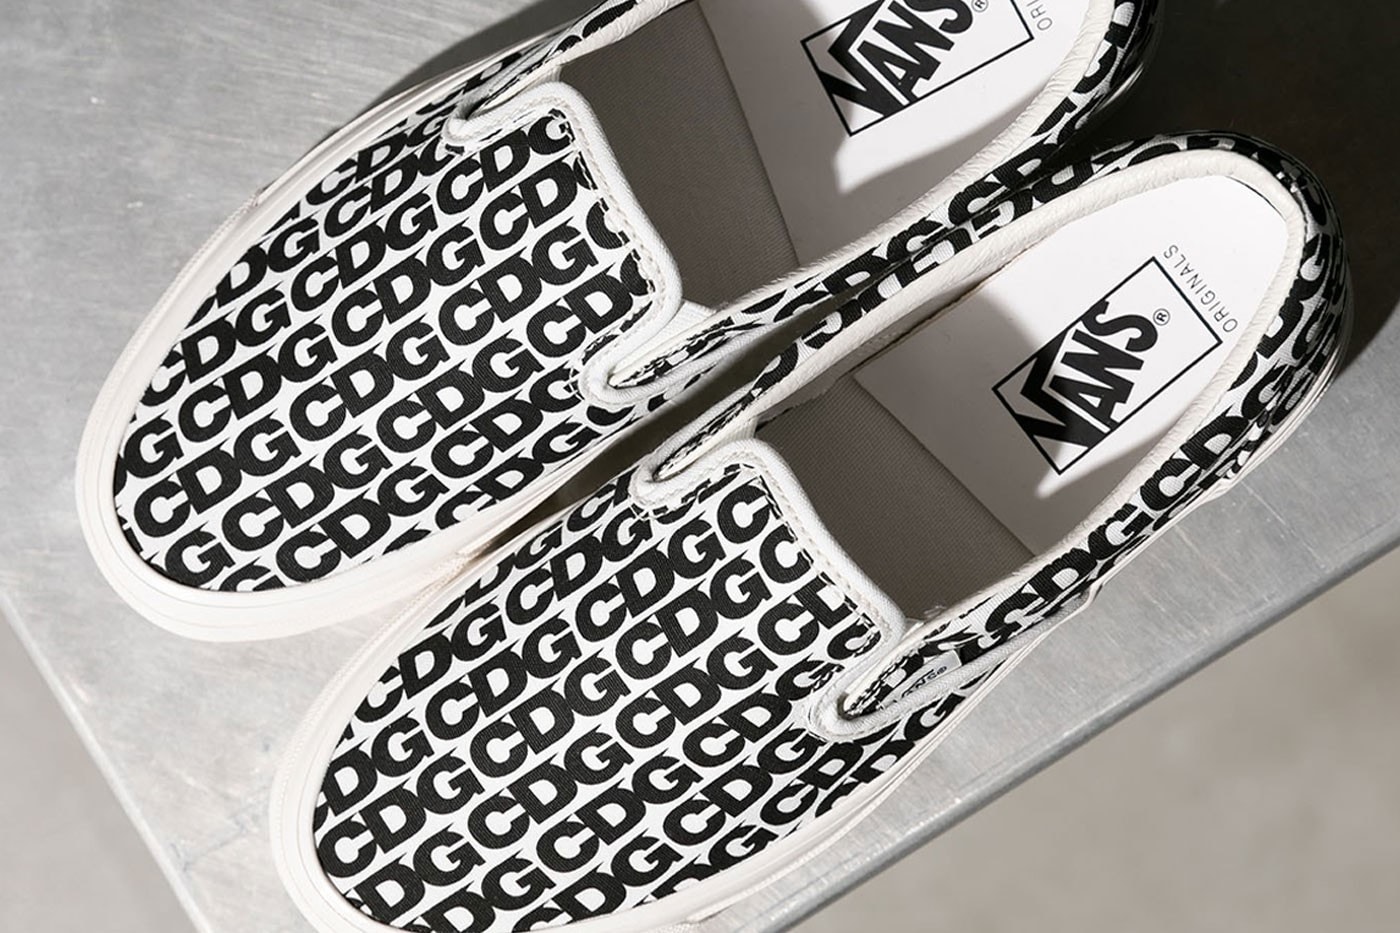 COMME des GARÇONS CDG x Vault by Vans Slip-On 最新聯名鞋款正式登場